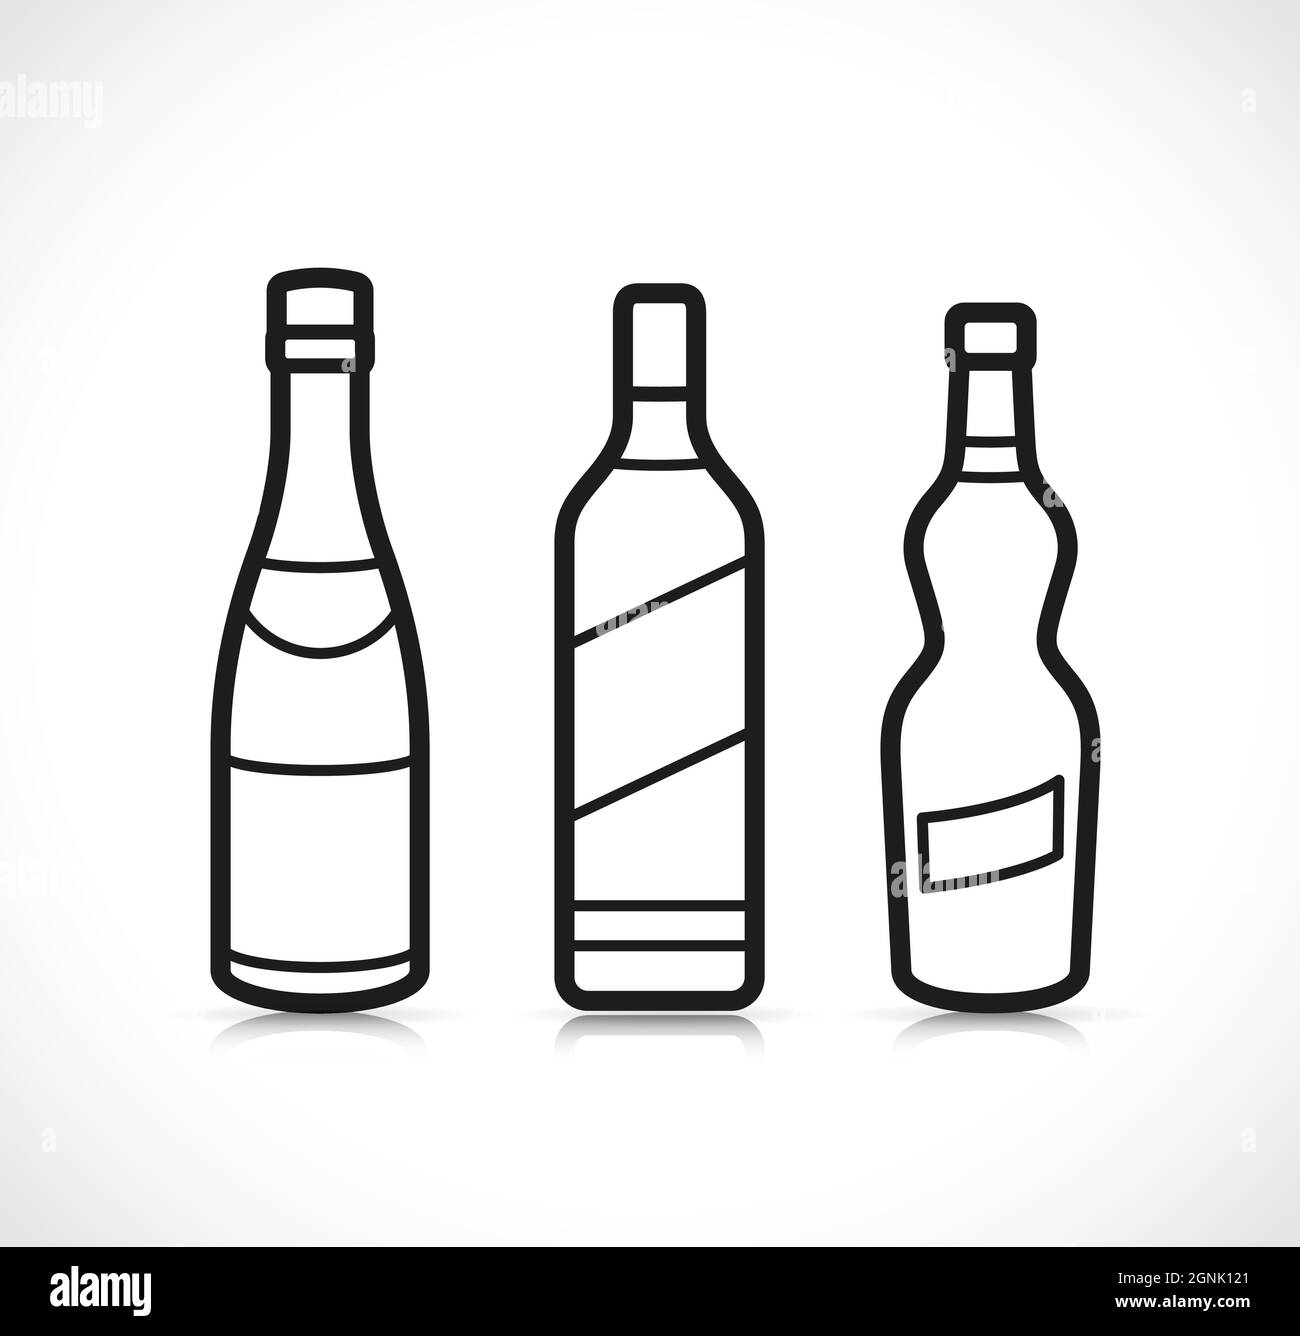 Iconos De Botellas De Alcohol Fotografías E Imágenes De Alta Resolución Alamy 5082